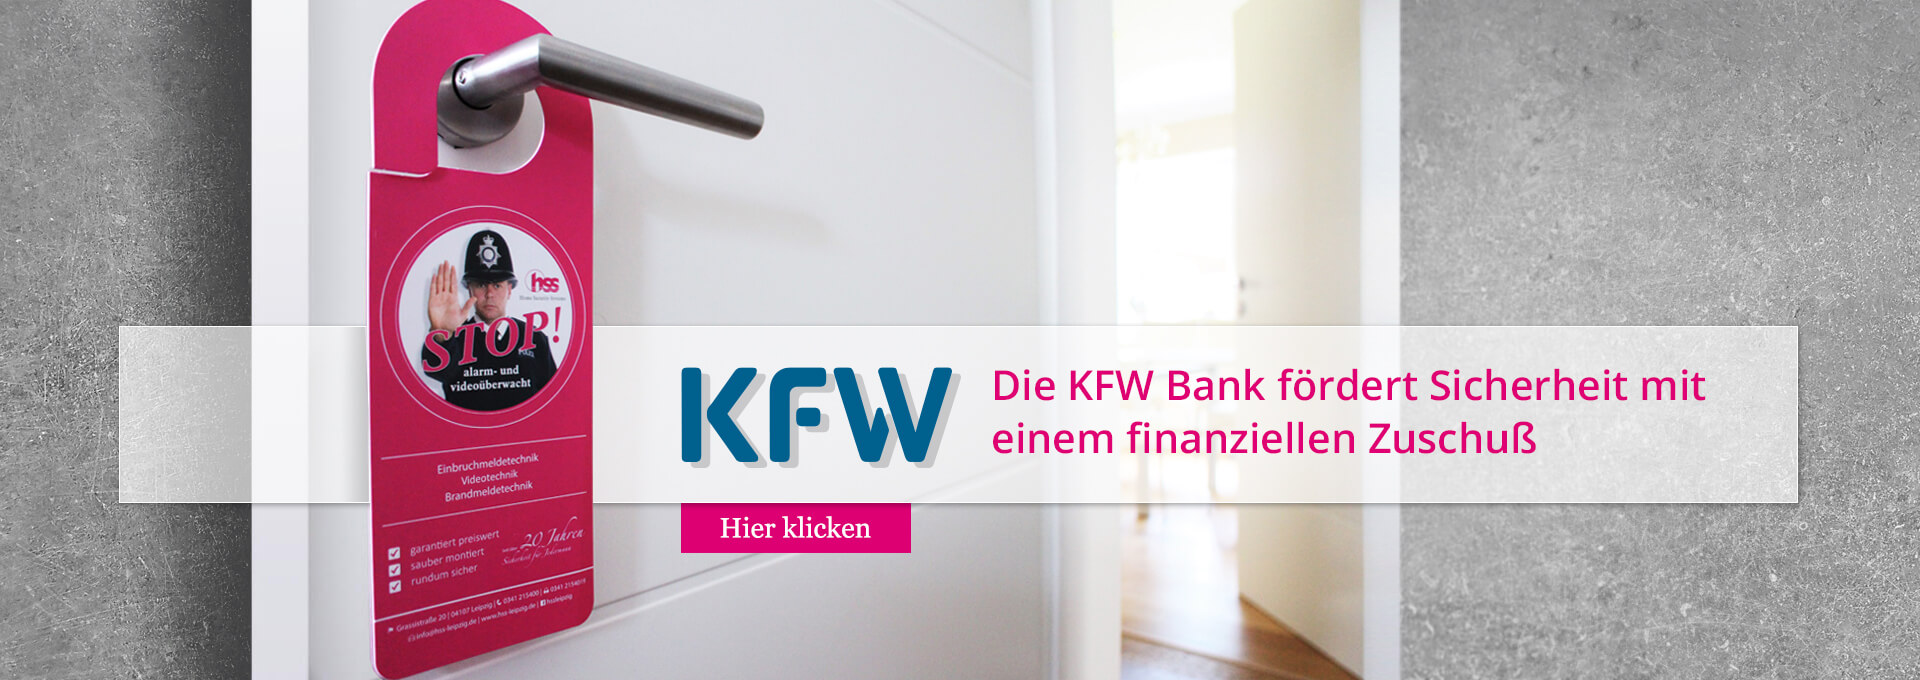 KFW - Die KFW Bank fördert Sicherheit mit einem finanziellen Zuschuß